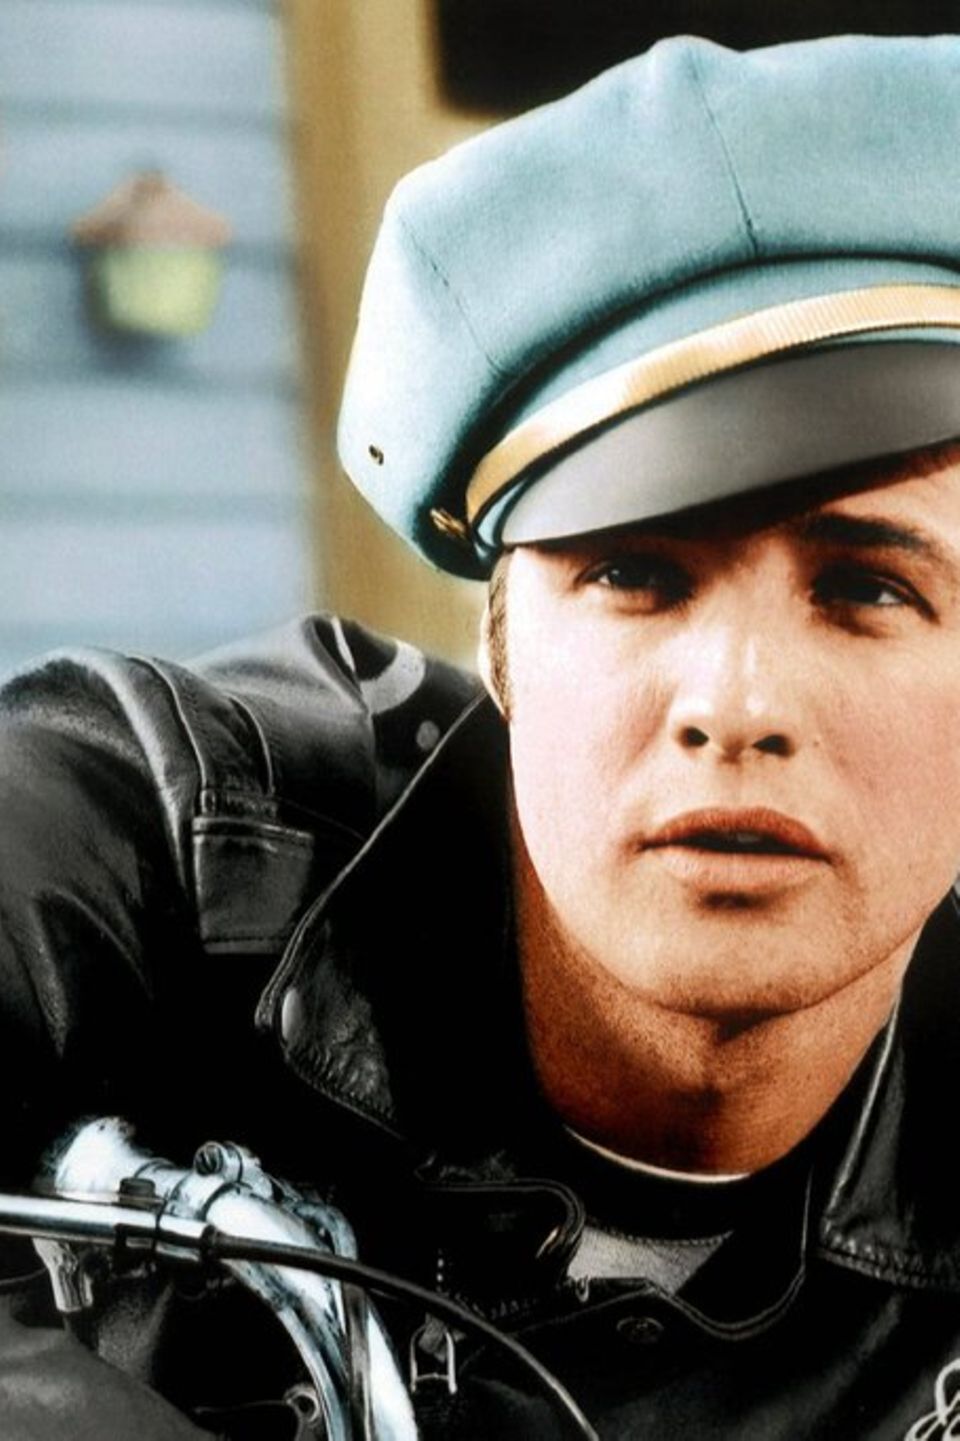 Cool wie kein anderer: Marlon Brando als Gangleader Johnny Strabler in "Der Wilde".